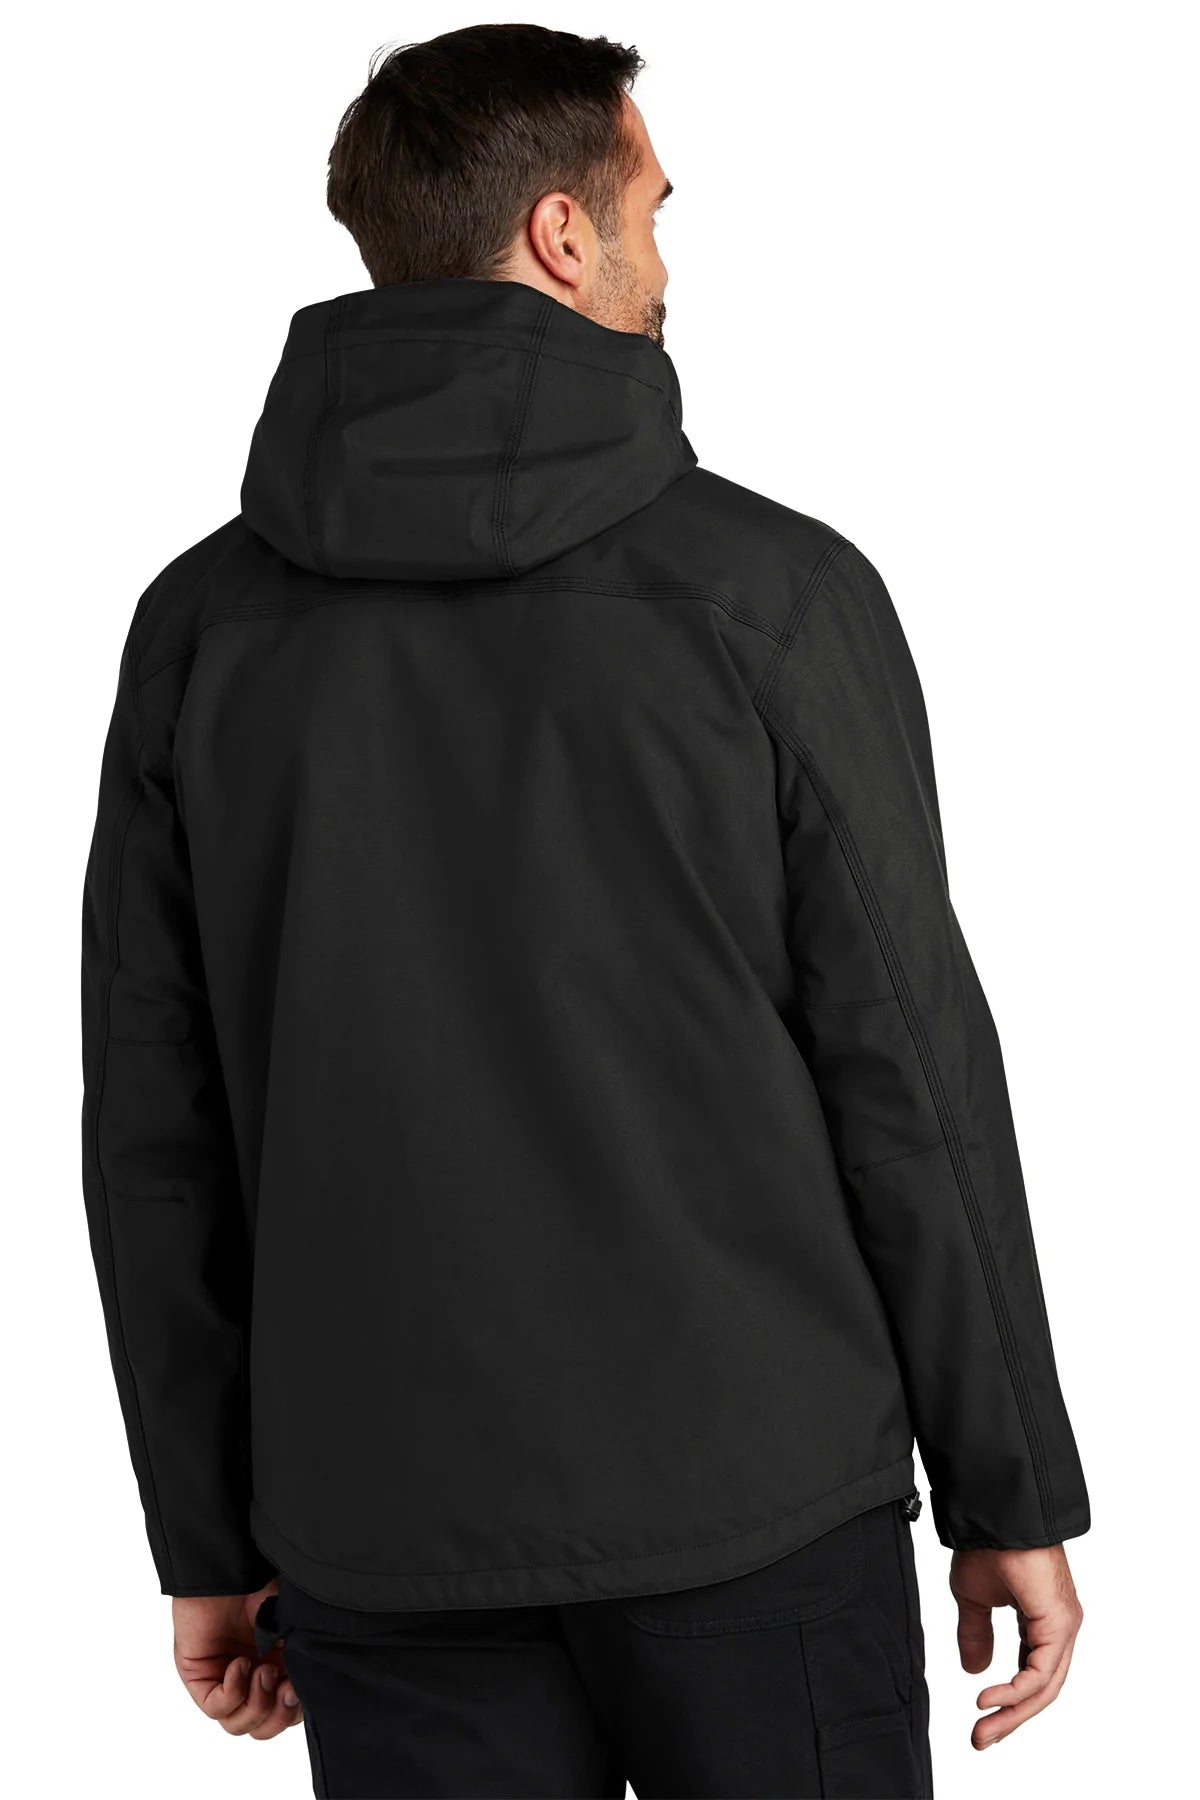 Carhartt Shoreline Branded Jackets, Black